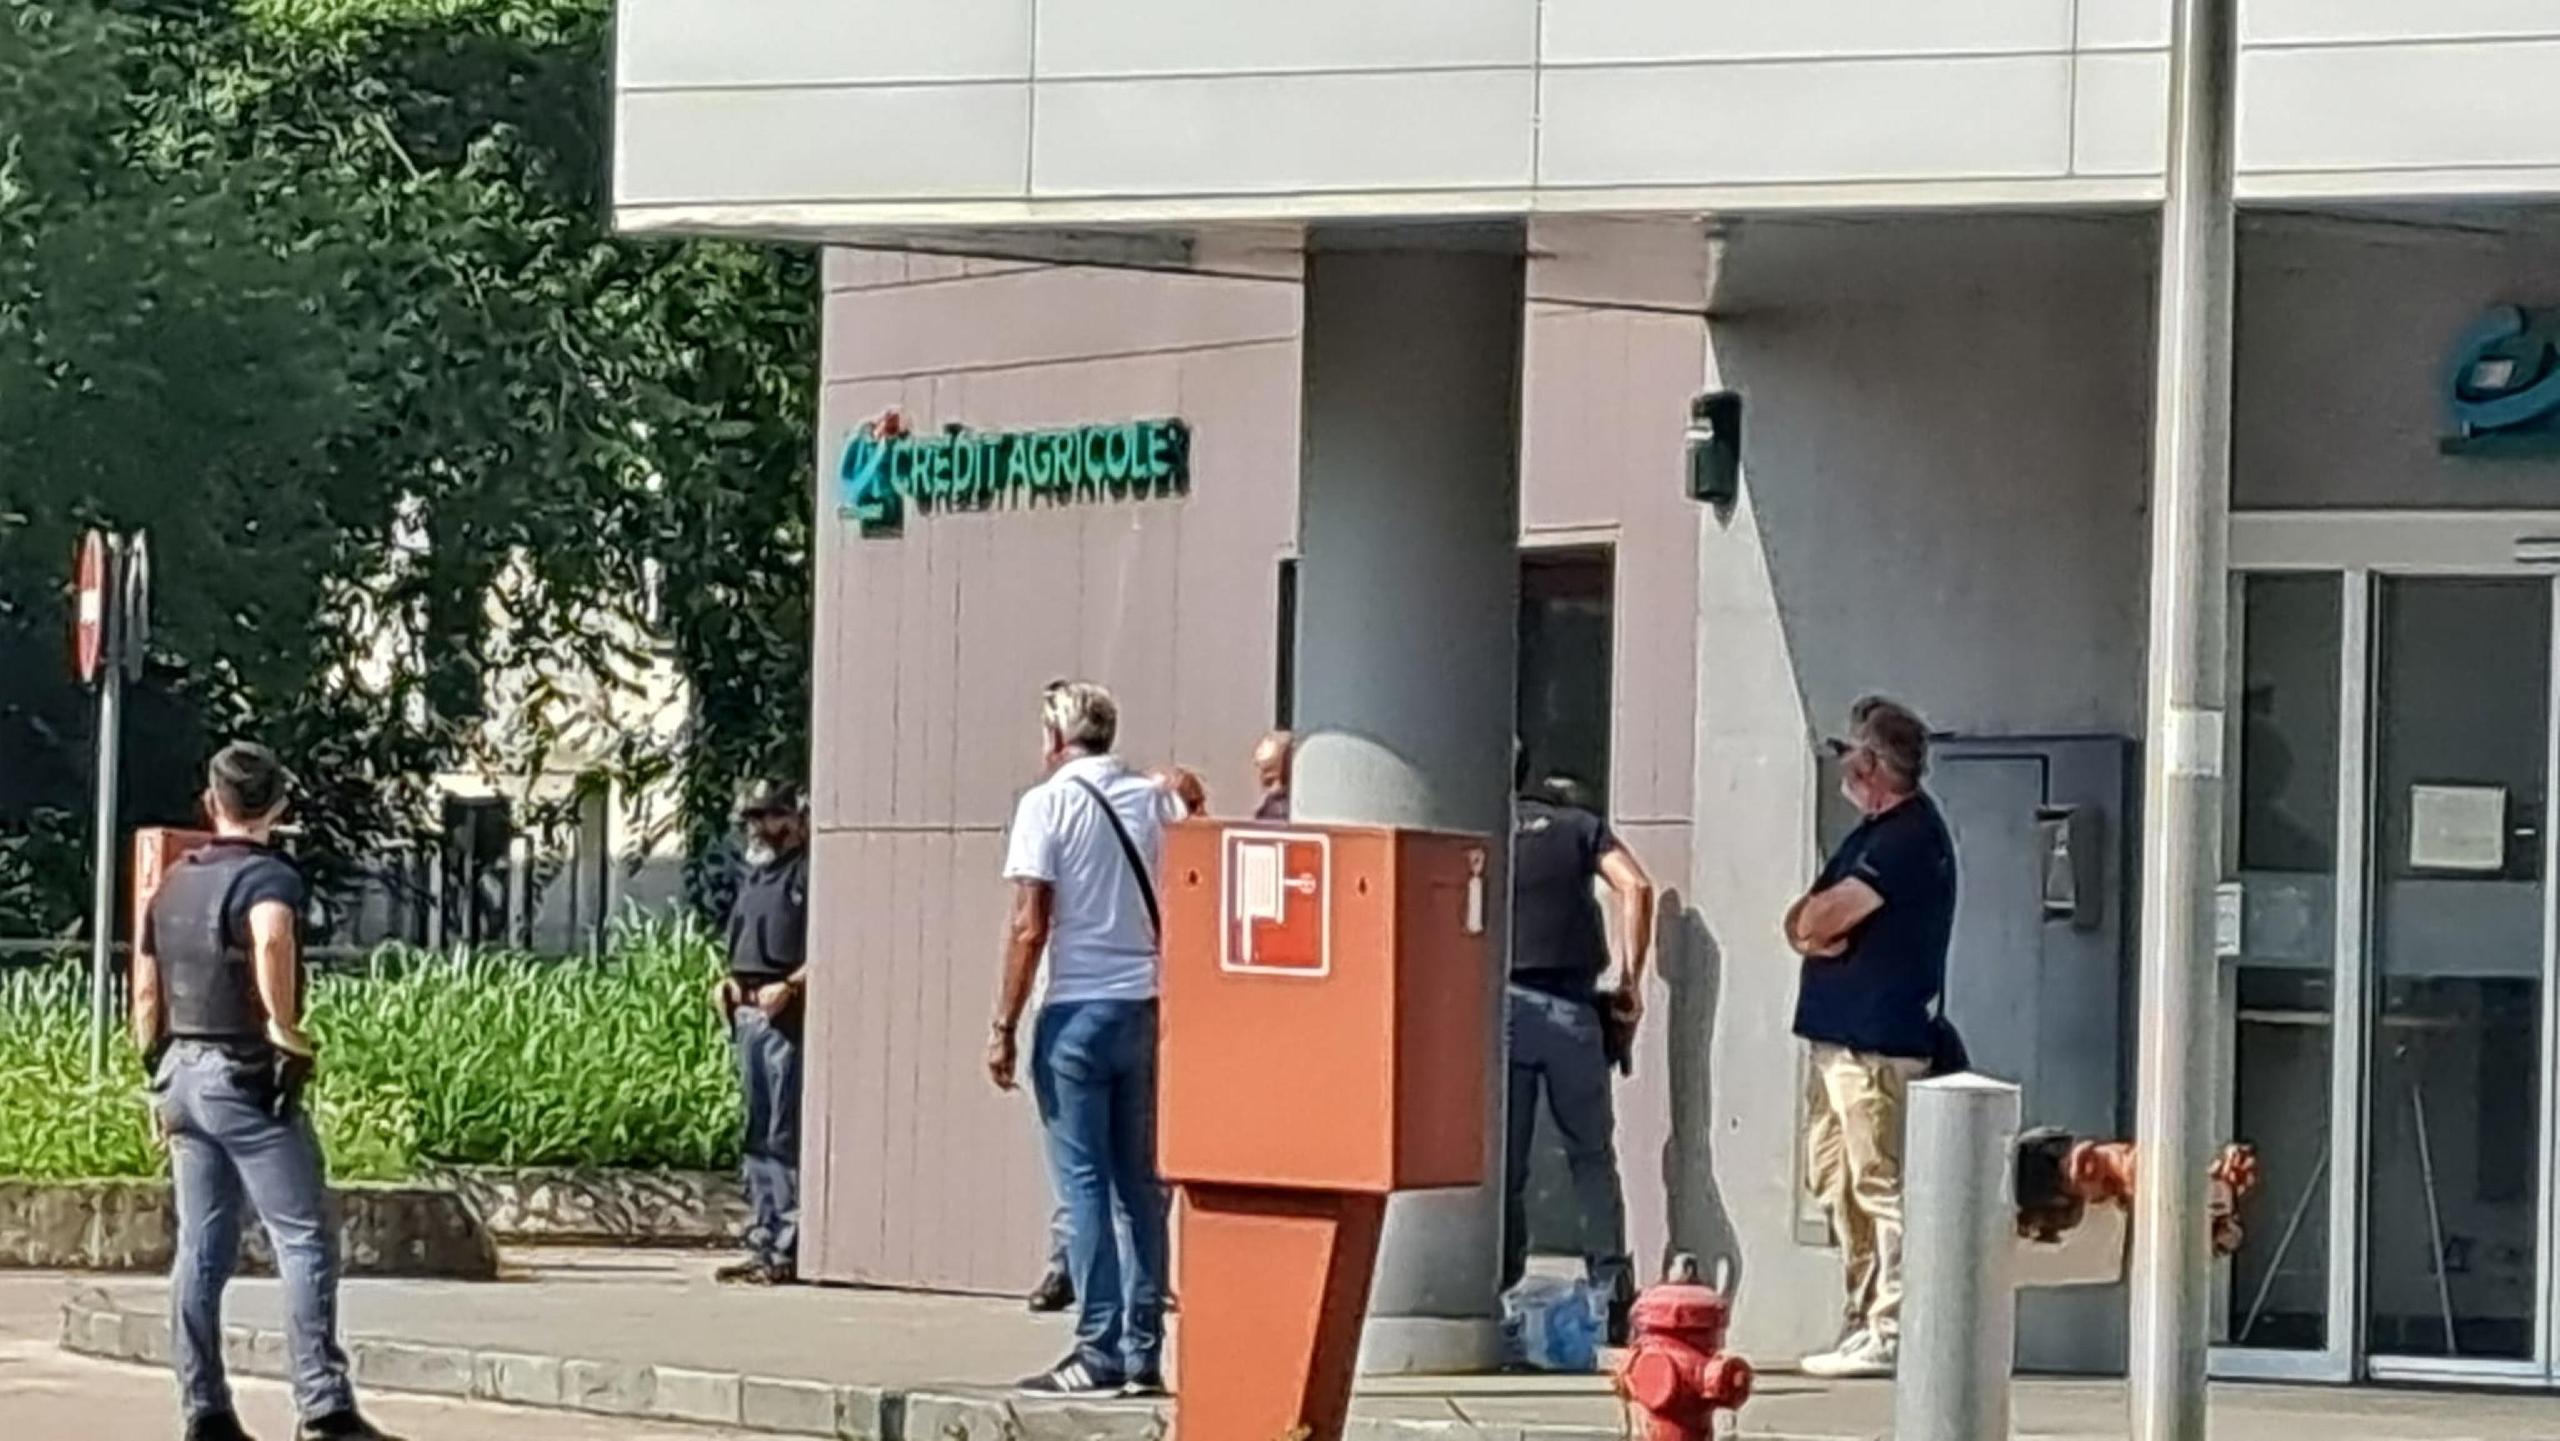 Tentato furto in banca a Vicenza, agenti entrano nell’edificio. Zona blindata: segui la diretta